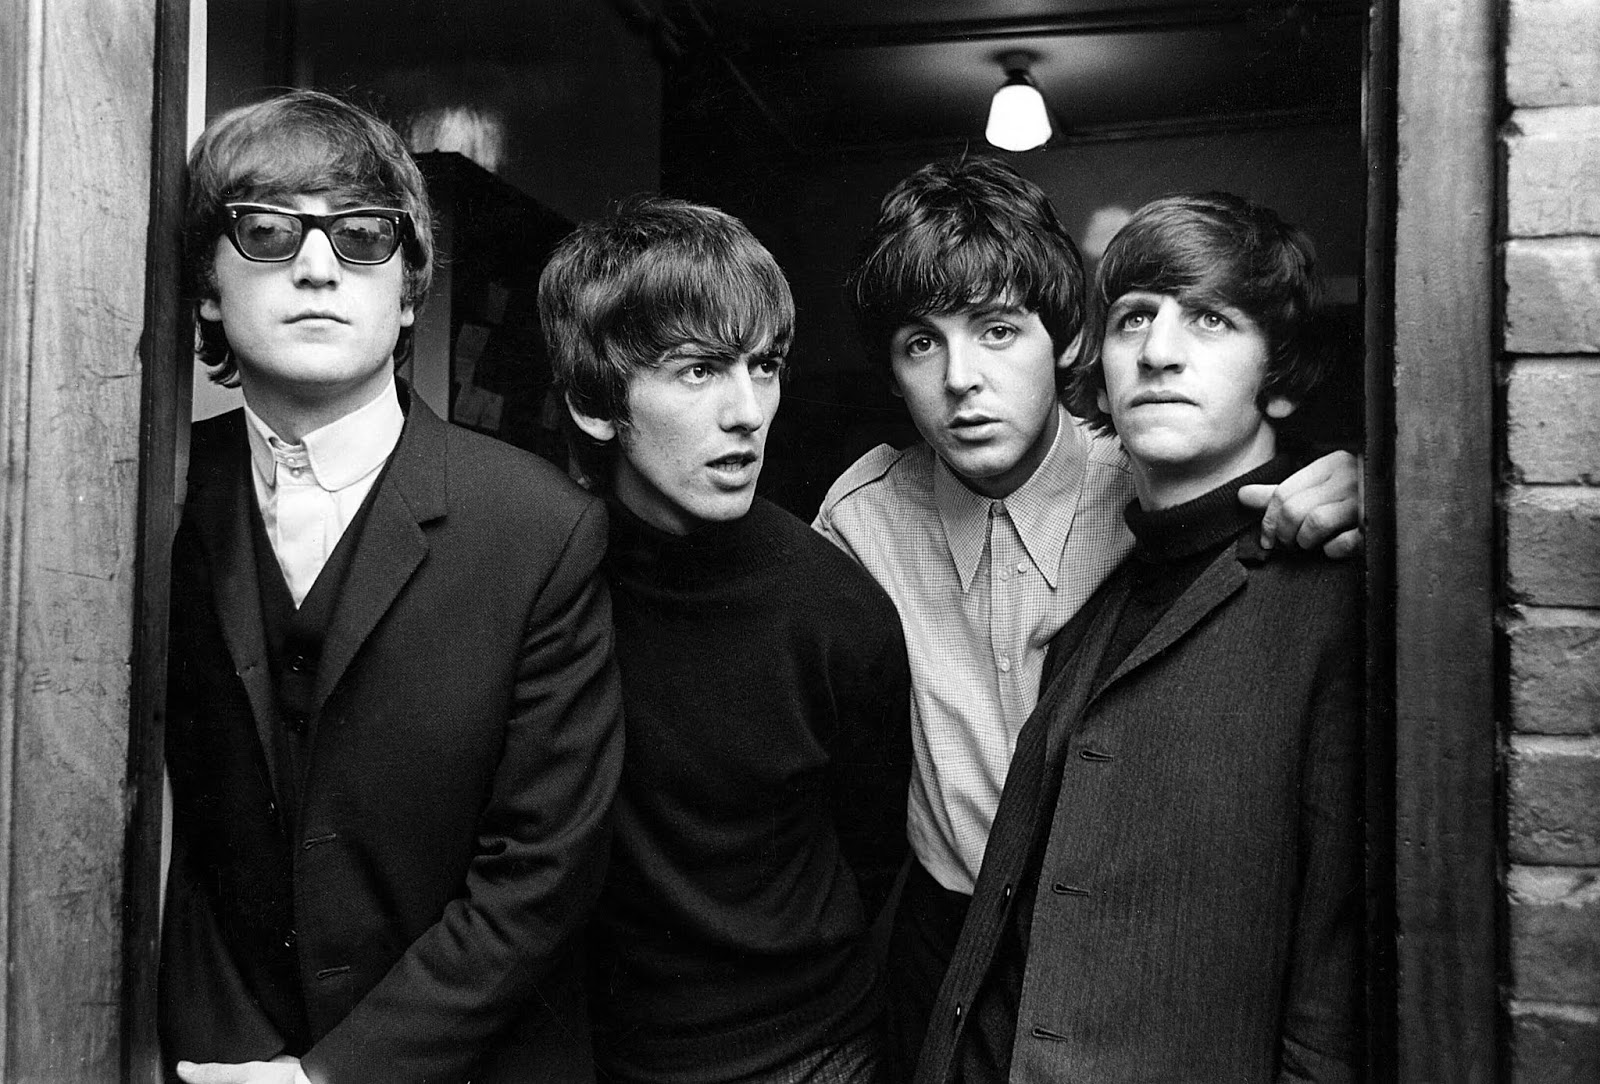 Exposição reúne fotos inéditas da era Beatles feitas por Paul McCartney; vem saber!